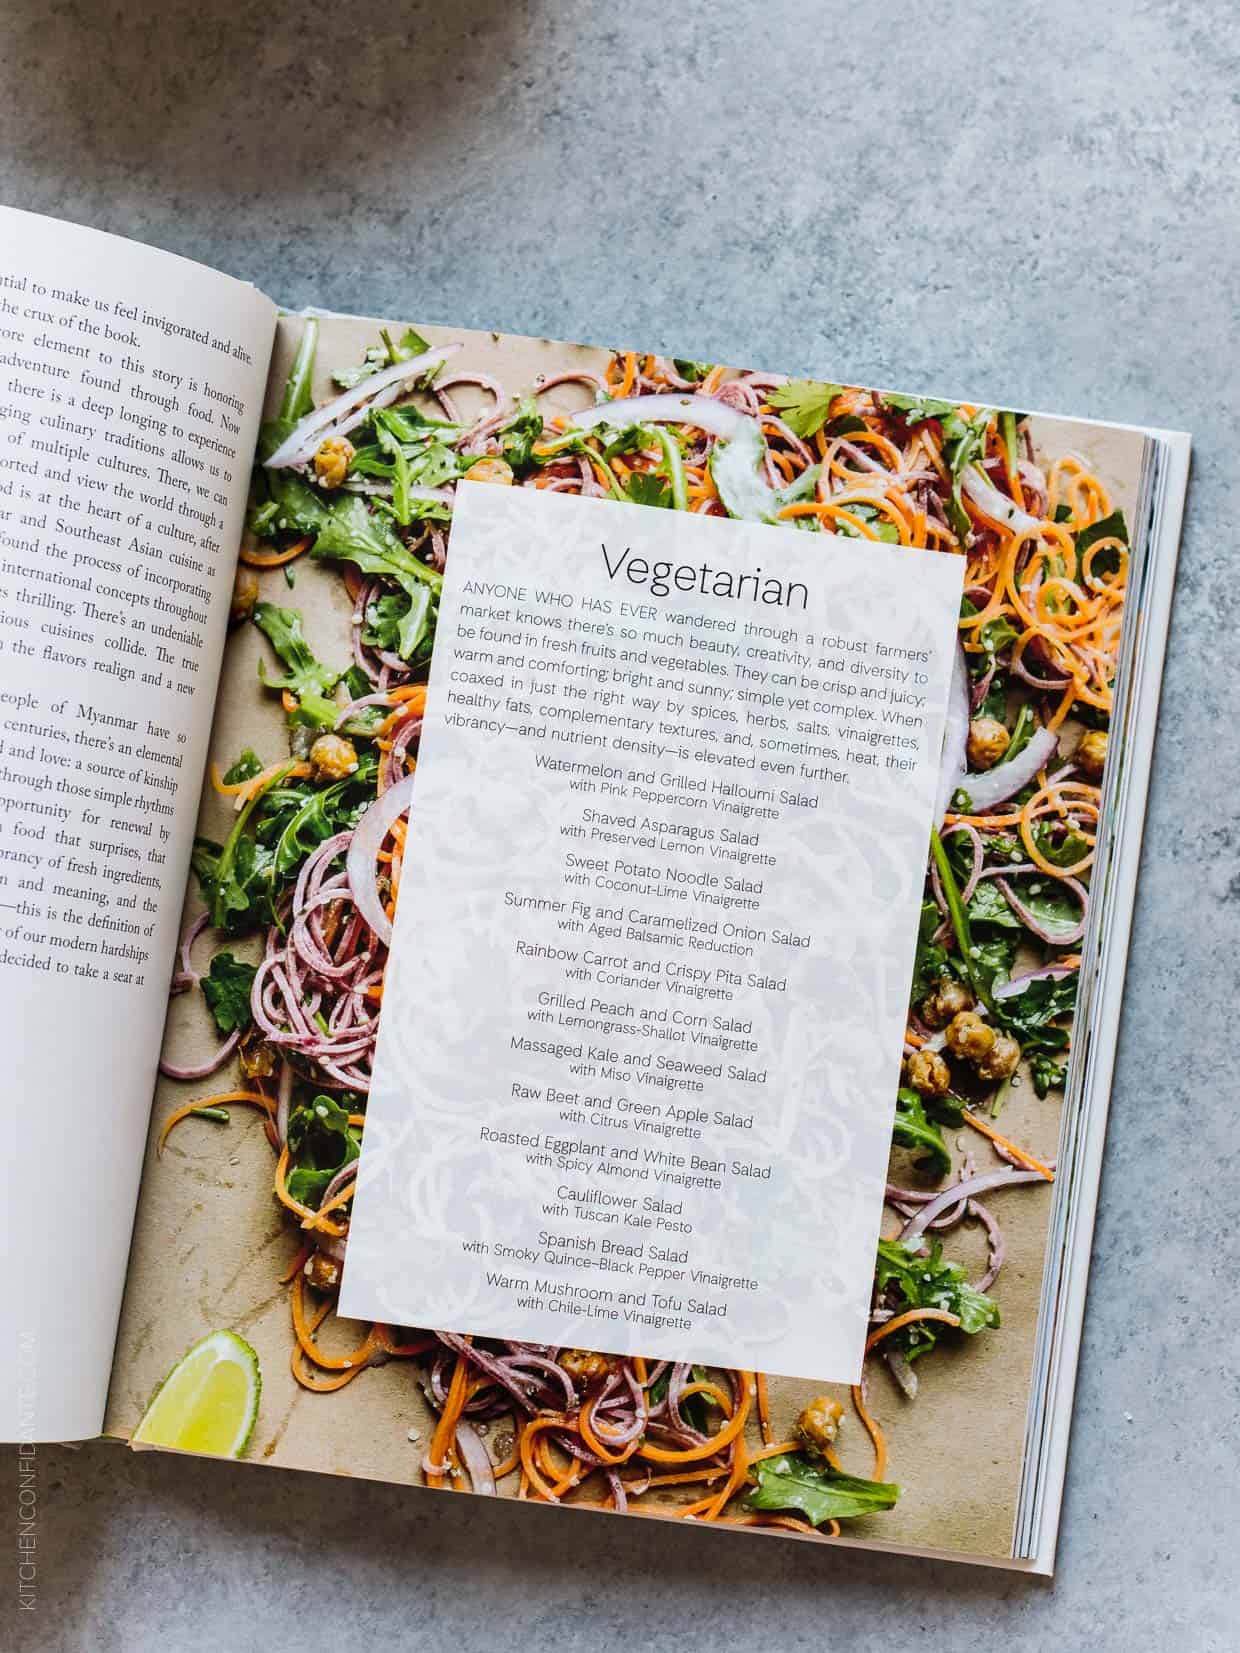 The Modern Salad cookbook by Elizabeth Howes.